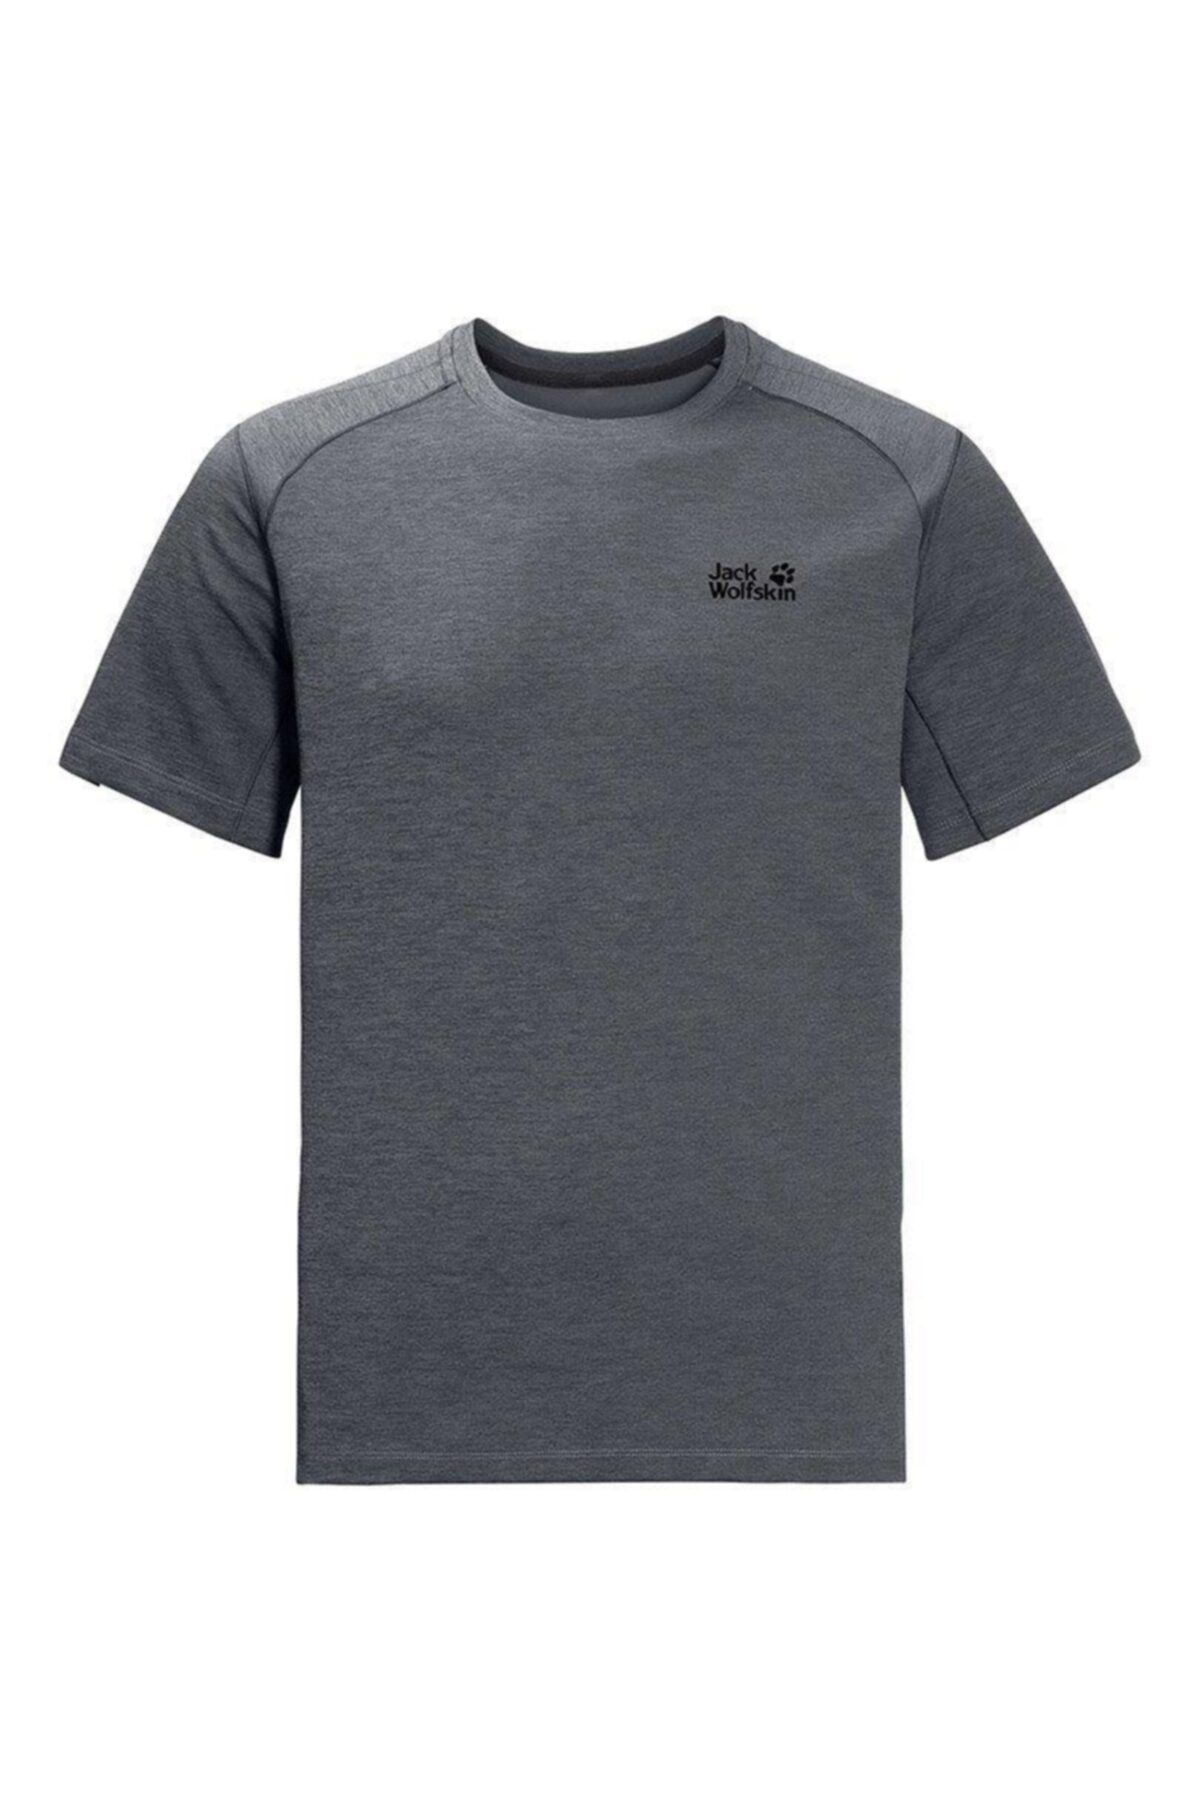 Jack Wolfskin T-shirt - 1806131 Dark Iron - 1806131-DARK-IRON